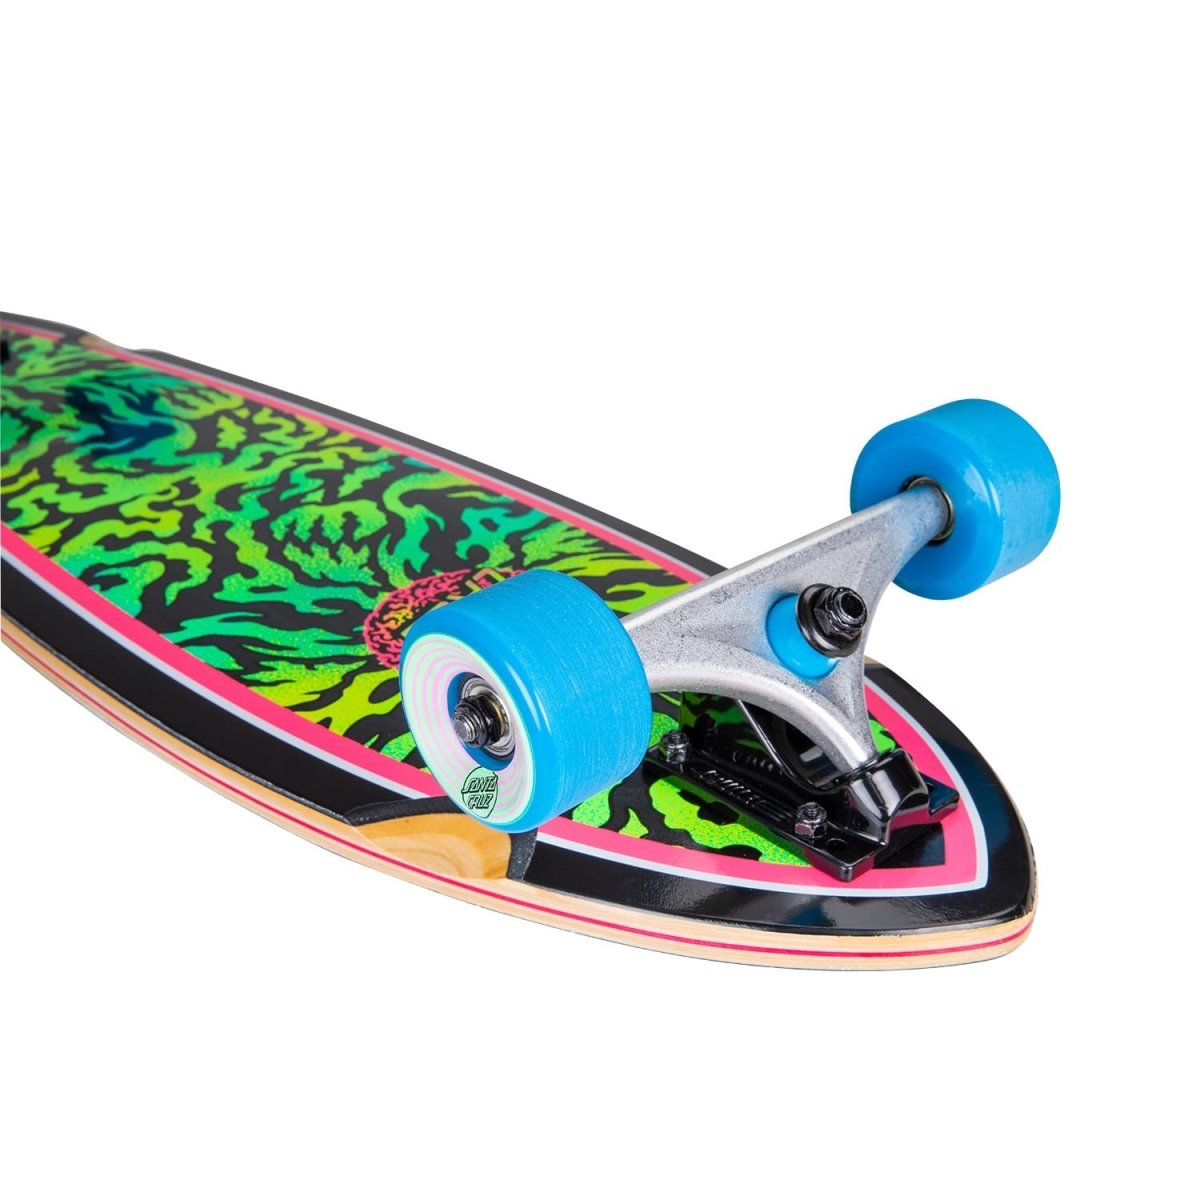 Santa Cruz Obscure Dot Pintail Complete Longboard - Skateboards - Rollbrett Mission